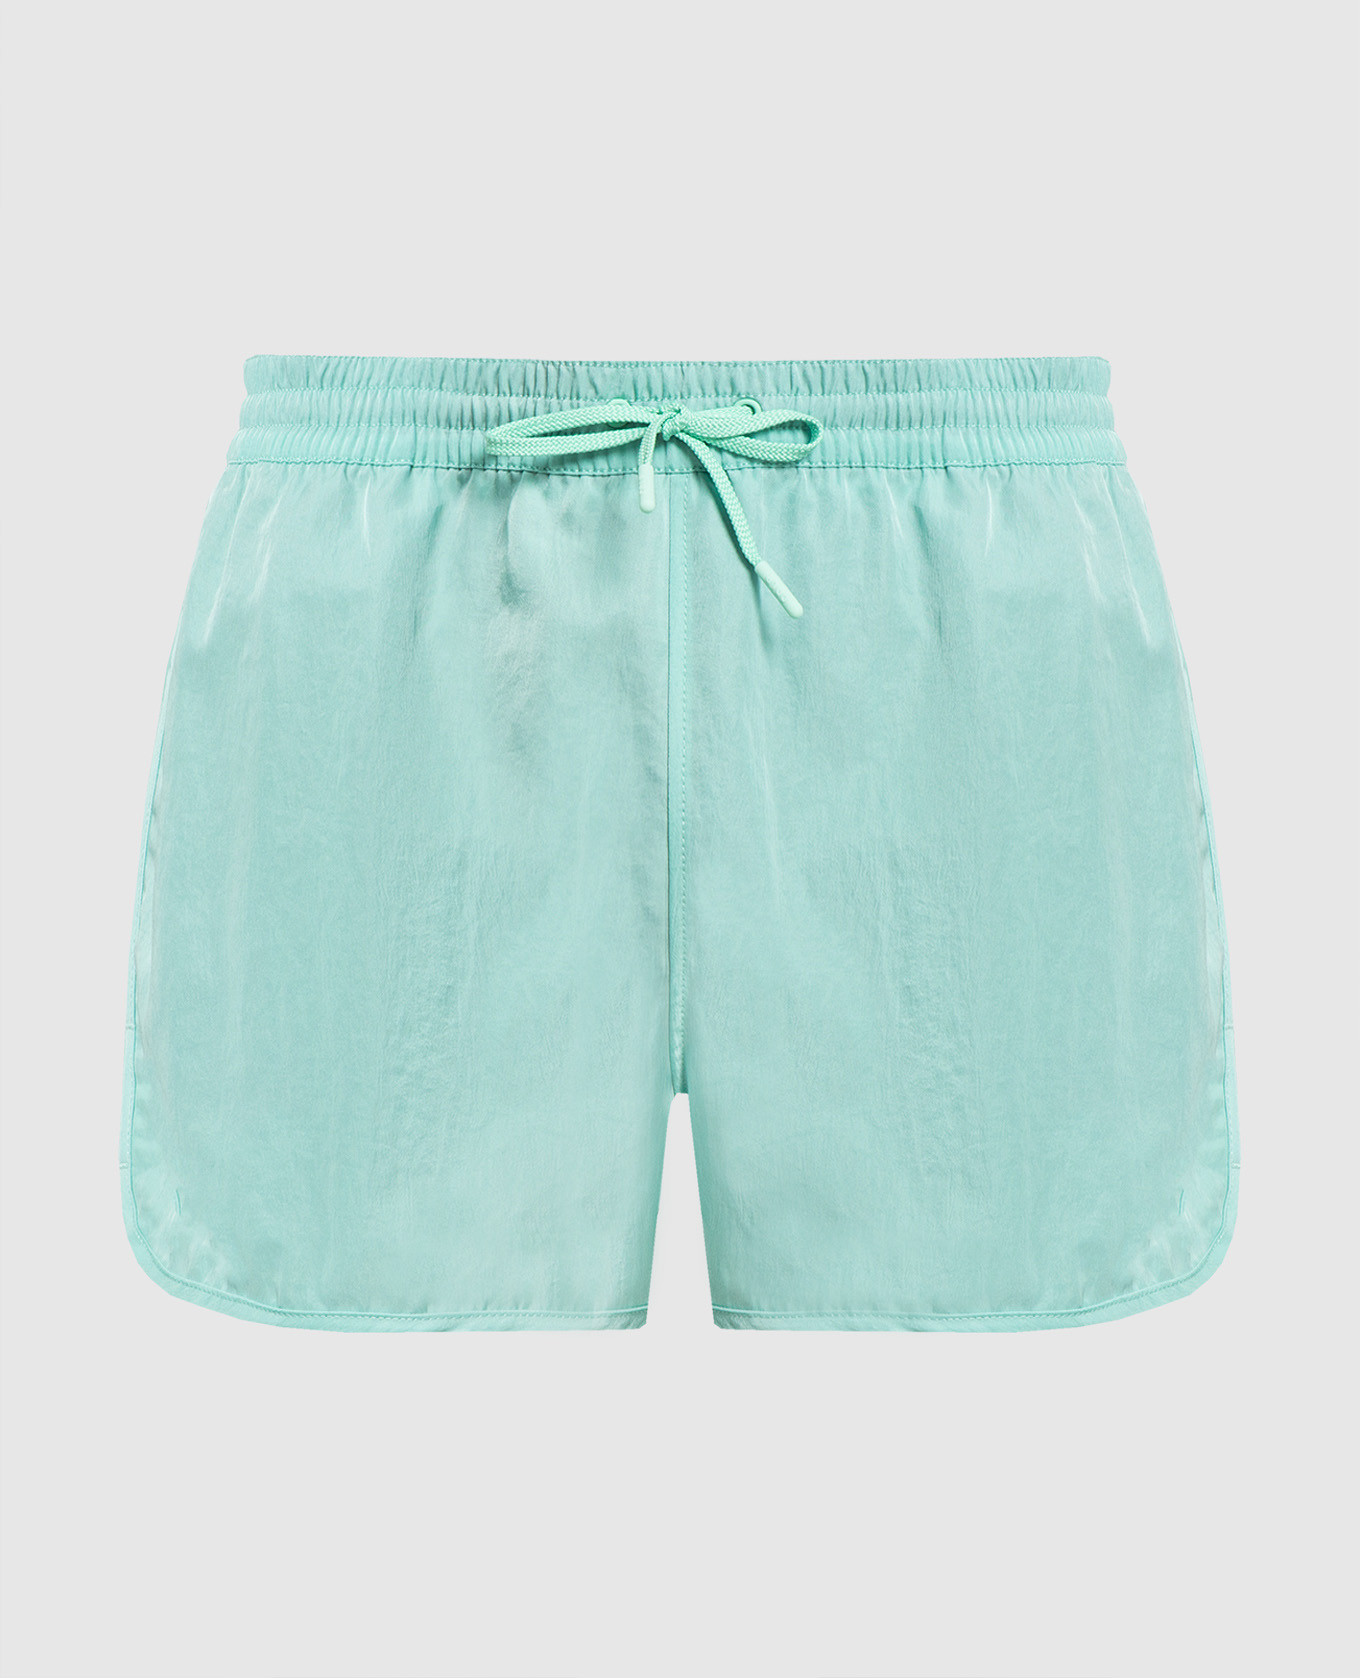 Green swimming shorts